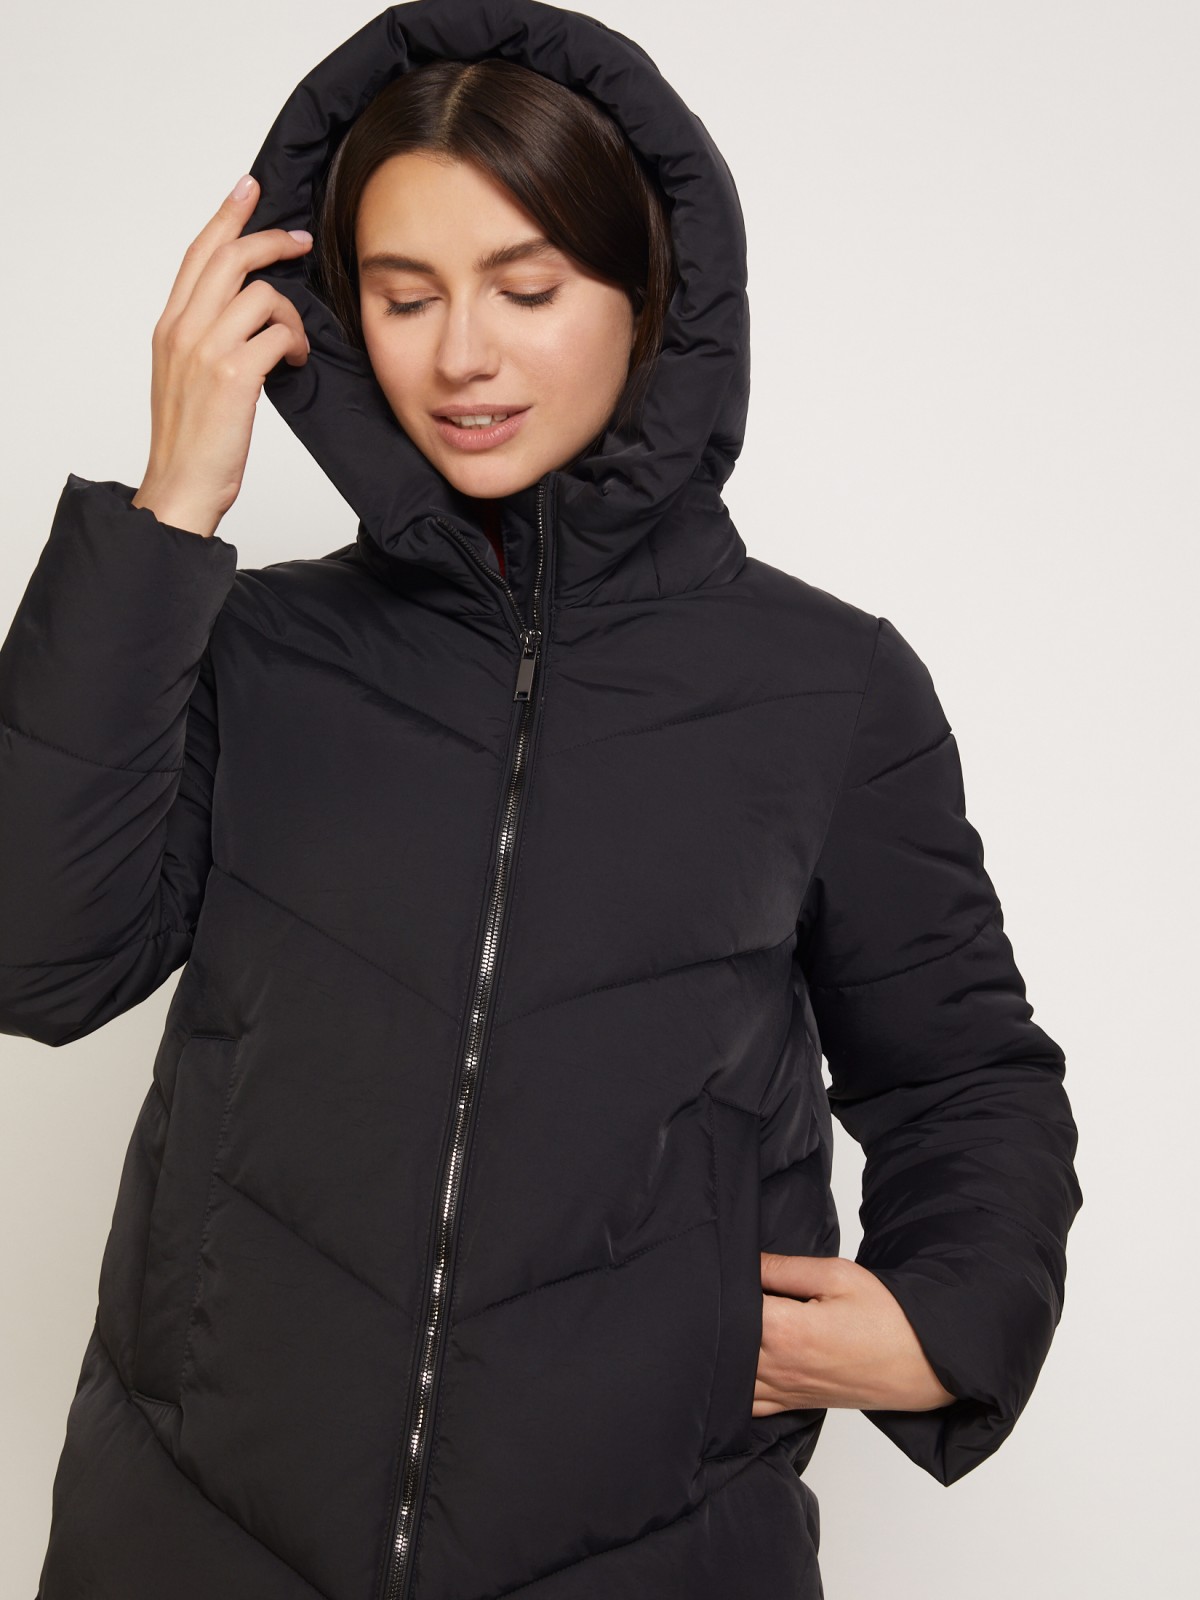 Тёплое стёганое пальто с капюшоном zolla 021345202054, цвет черный, размер XS - фото 5